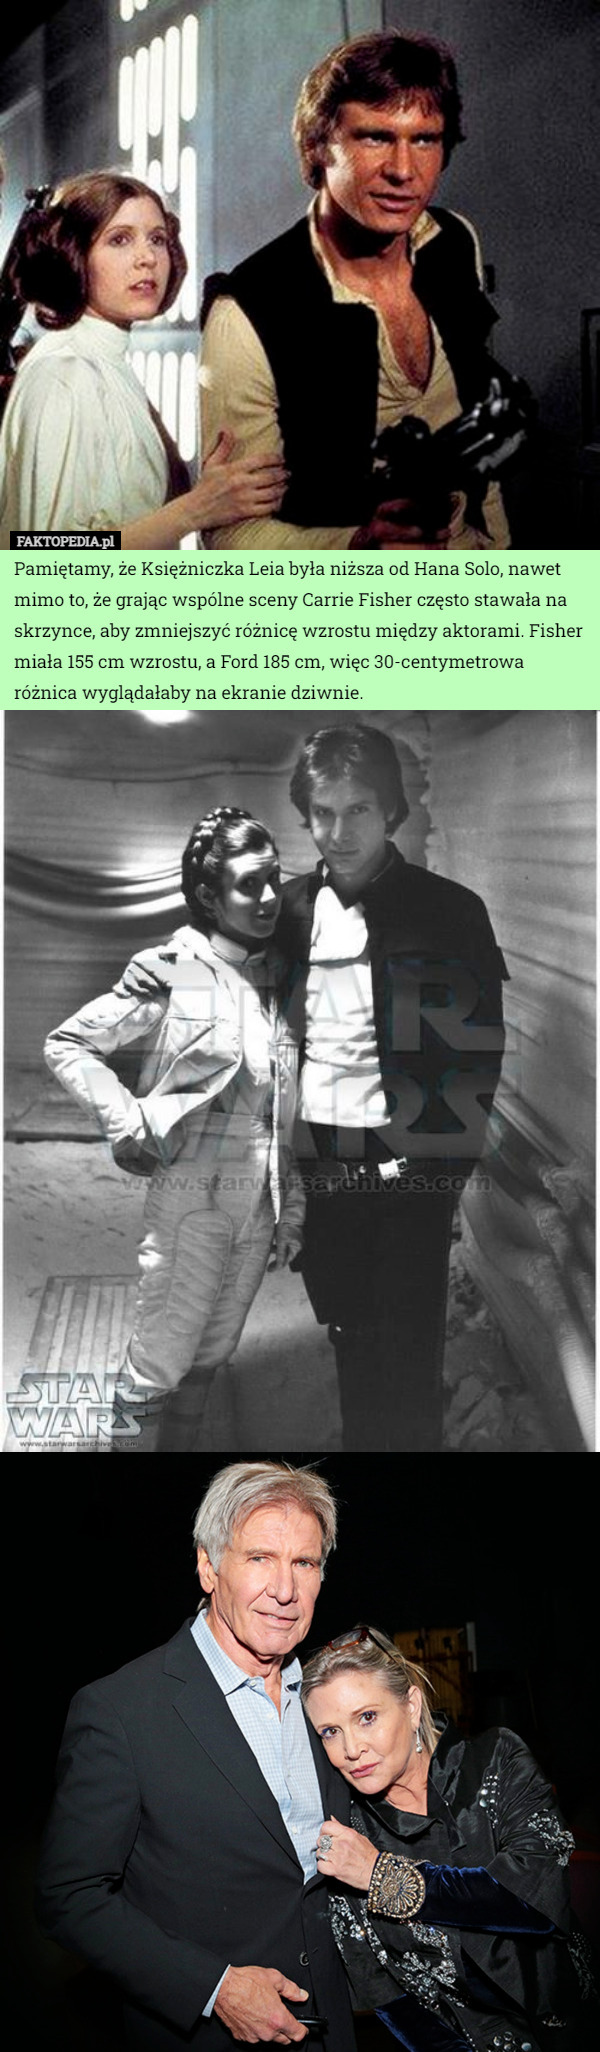 Pamiętamy, że Księżniczka Leia była niższa od Hana Solo, nawet mimo to, że grając wspólne sceny Carrie Fisher często stawała na skrzynce, aby zmniejszyć różnicę wzrostu między aktorami. Fisher miała 155 cm wzrostu, a Ford 185 cm, więc 30-centymetrowa różnica wyglądałaby na ekranie dziwnie. 